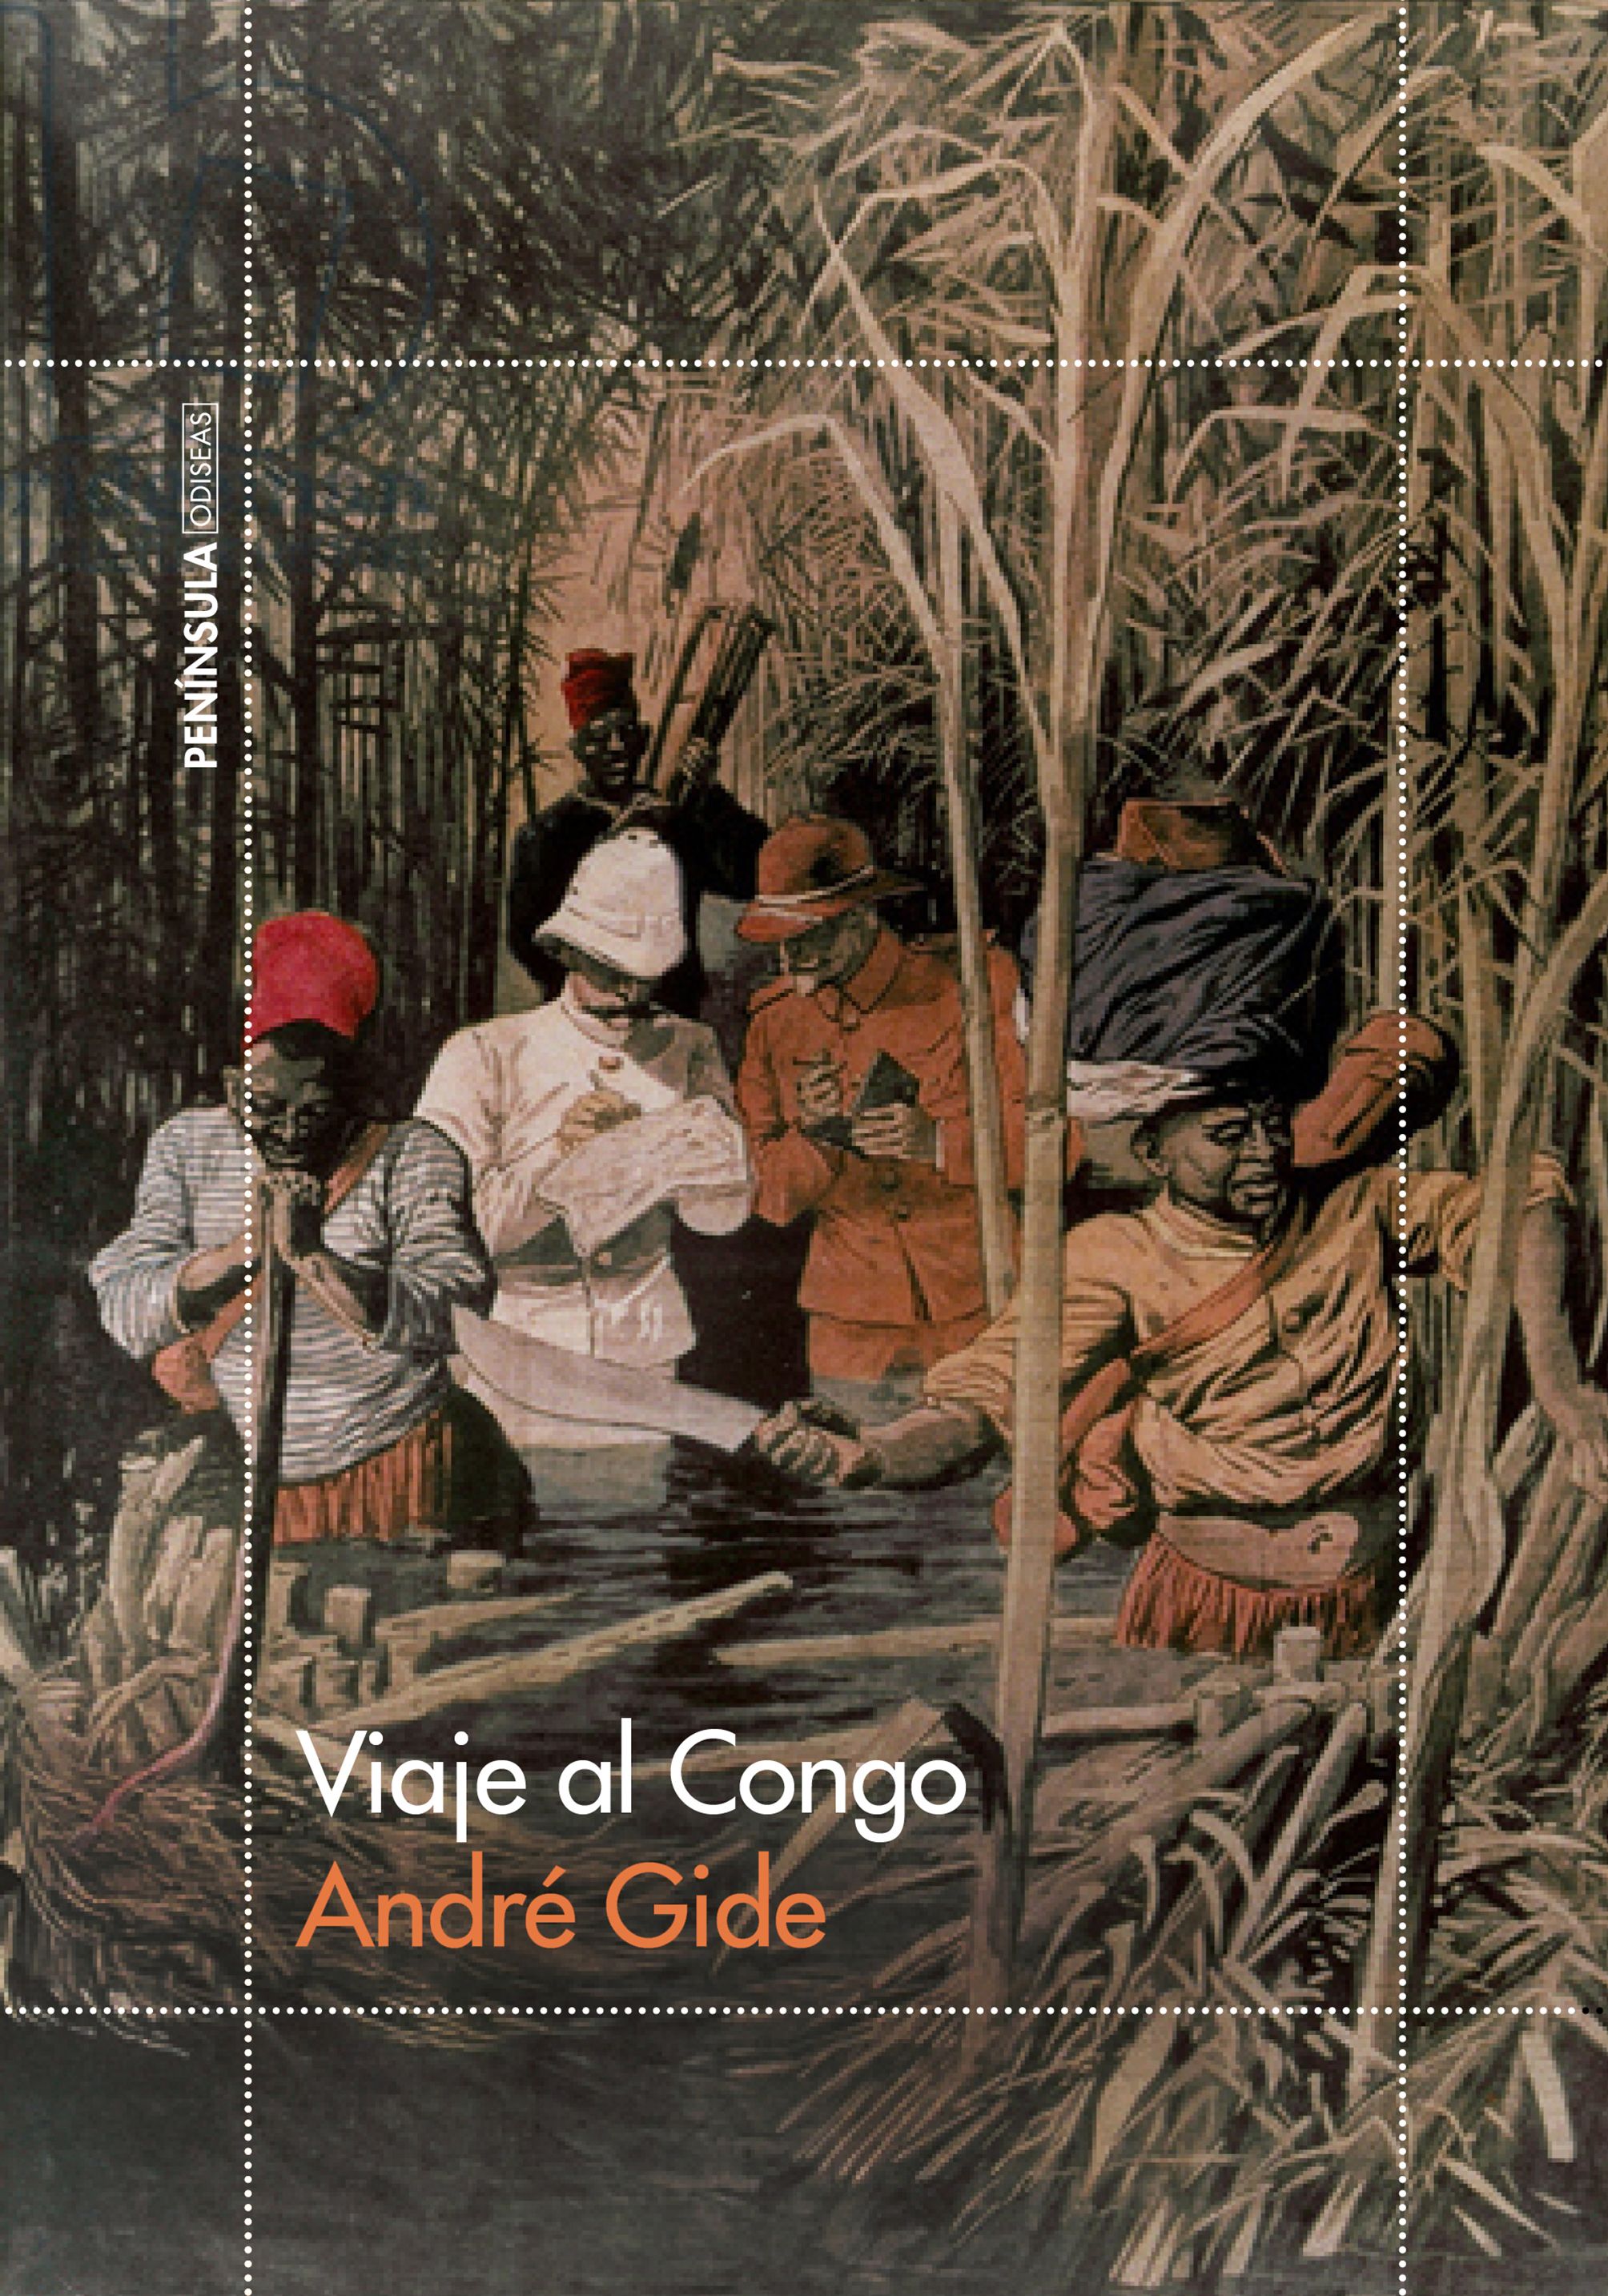 Portada del libro "Viaje al Congo", de André Gide. (Cortesía. Planeta de Libros).